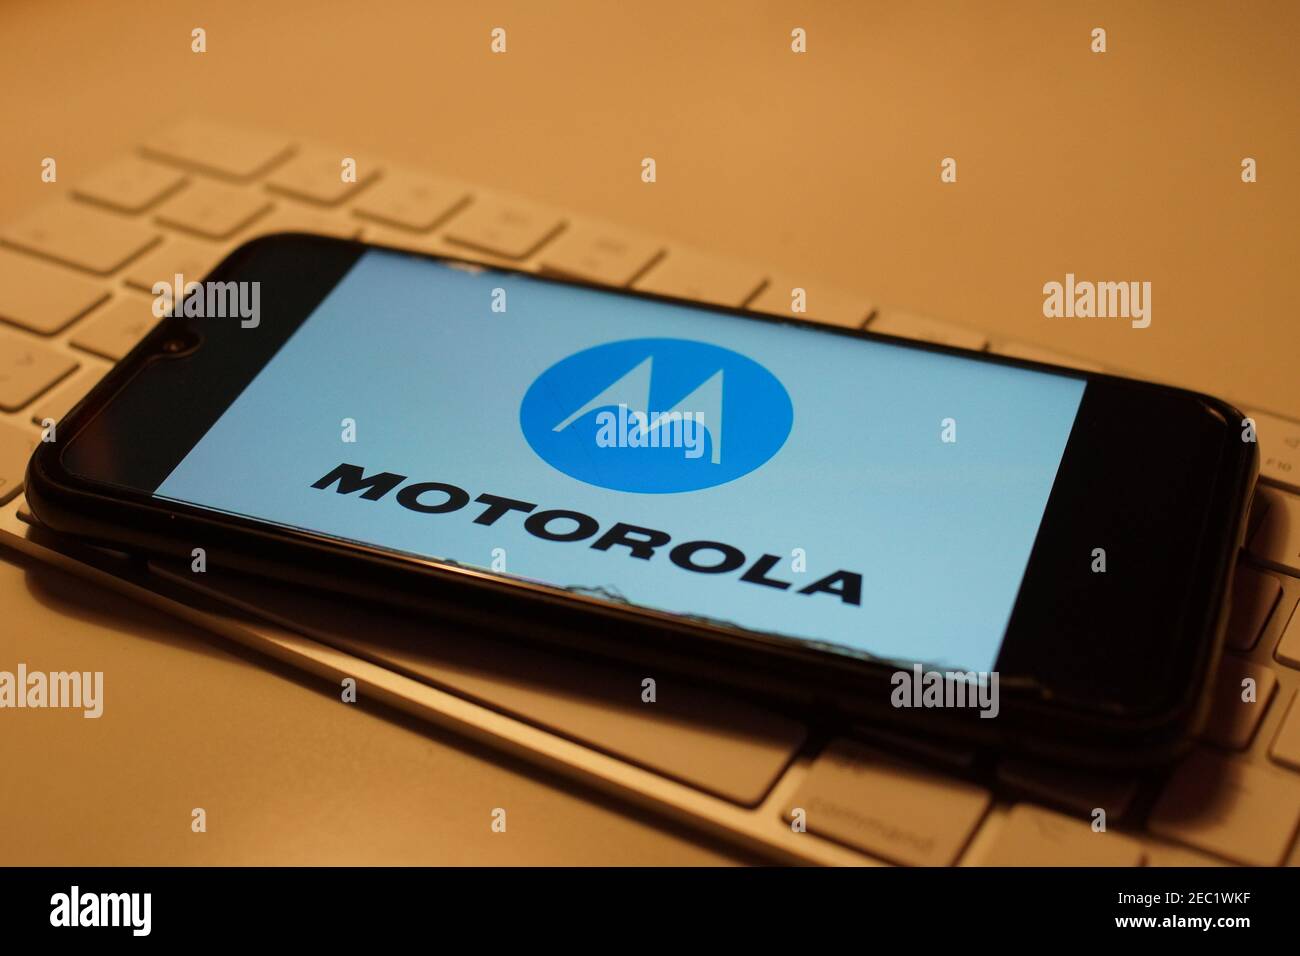 Smartphone with Motorola logo on computer keyboard Stock Photo